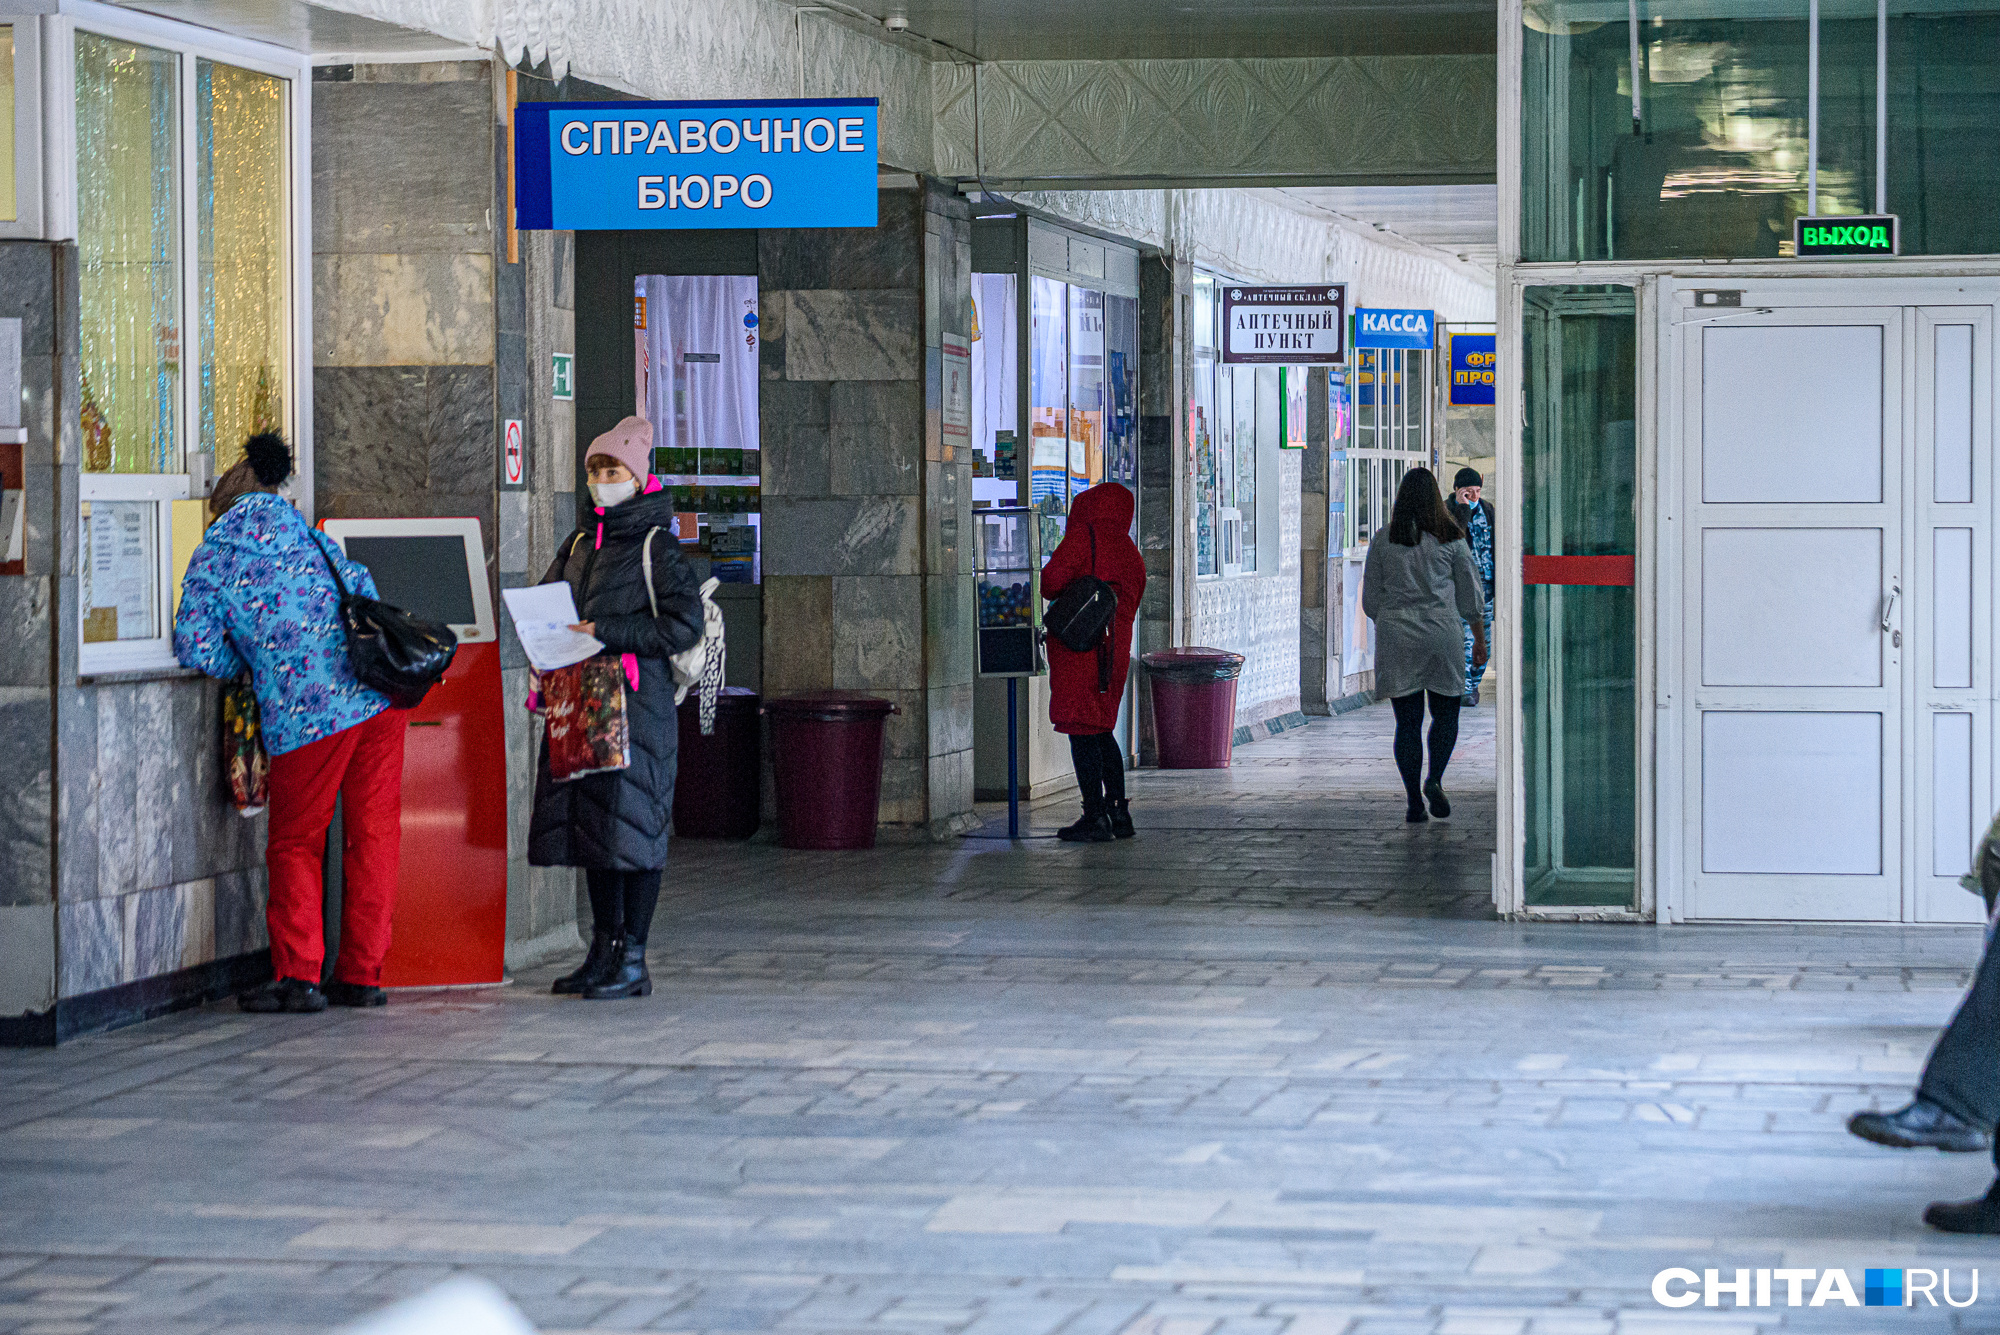 Госзакупка для больницы в Чите получила жалобу на нарушение закона